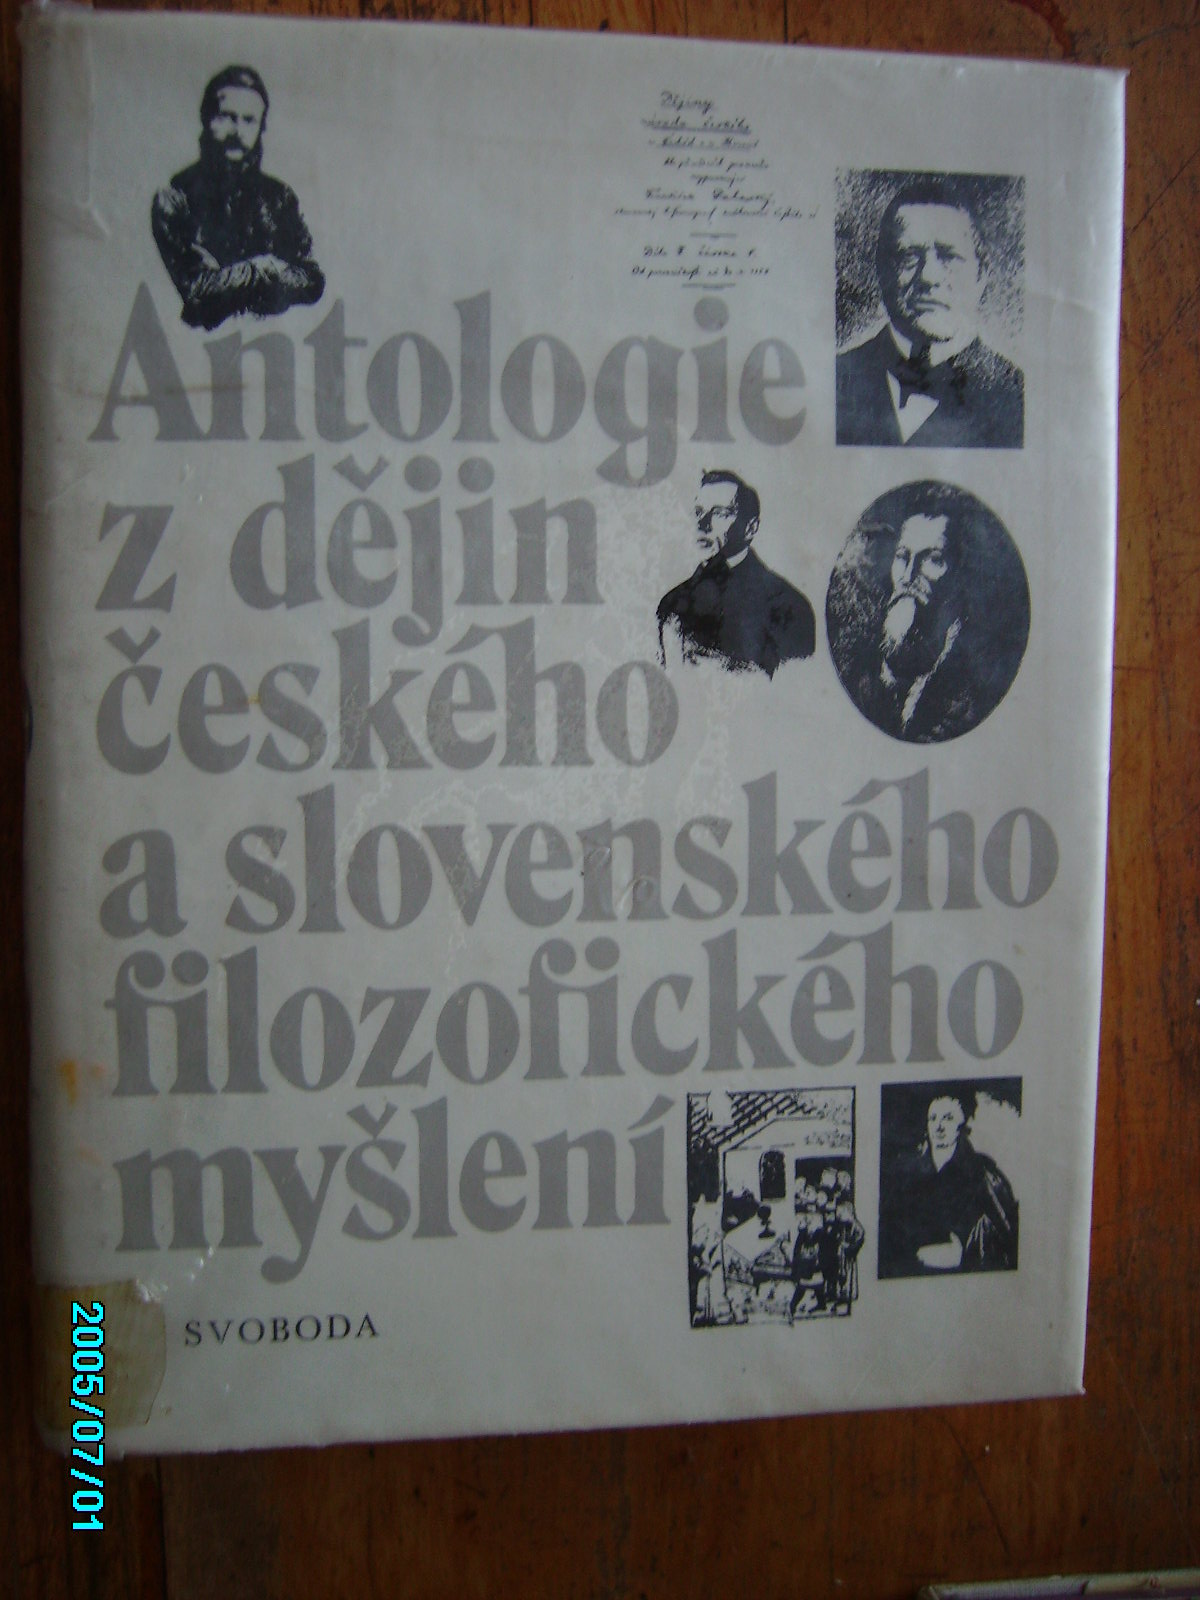 Antologie z djin eskho a slovenskho filozofickho mylen do roku 1848 a dfo rolu 1949